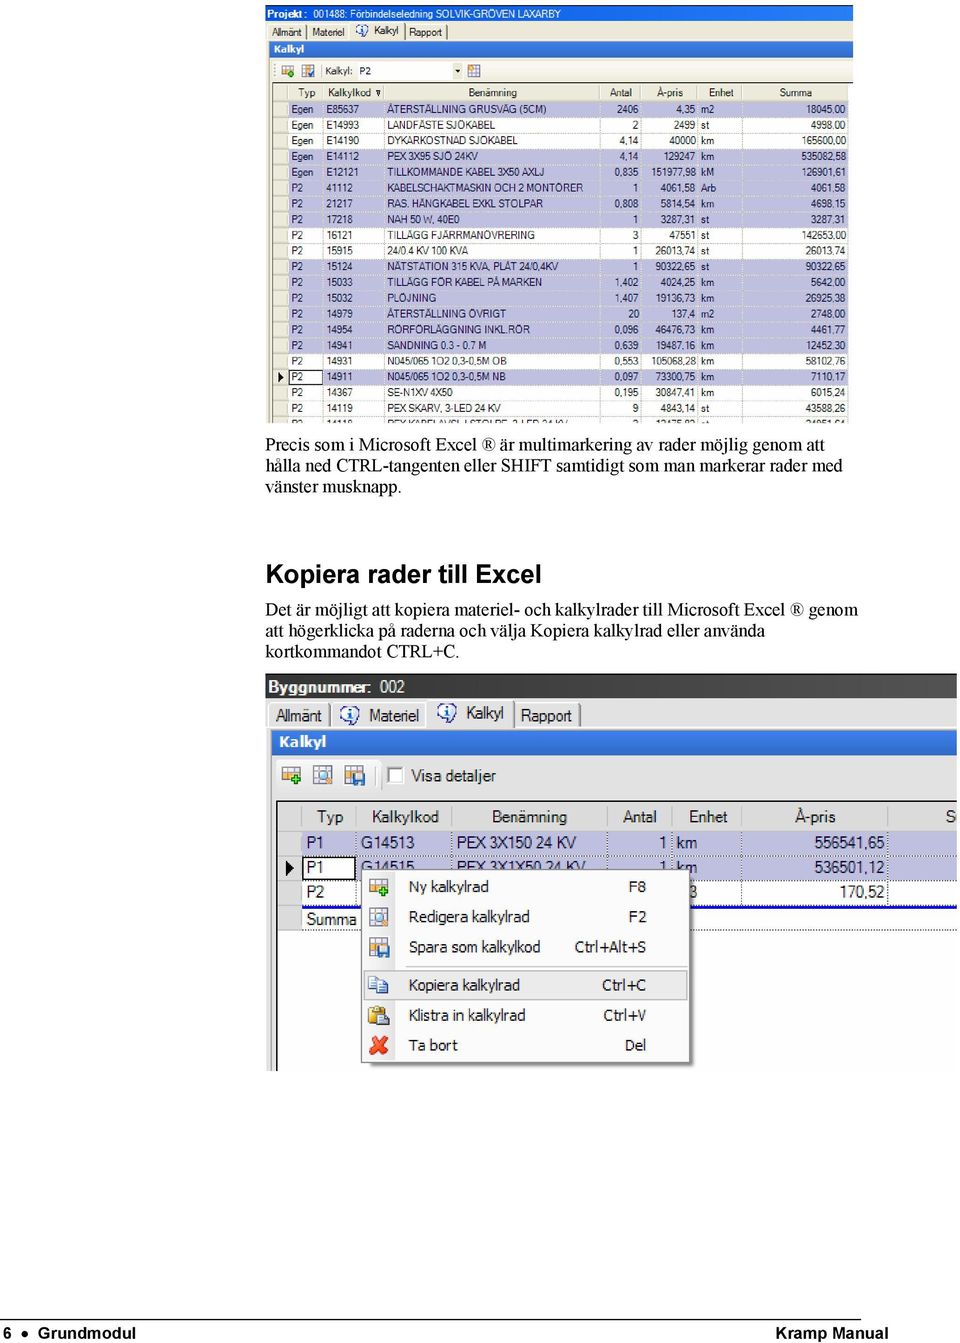 Kopiera rader till Excel Det är möjligt att kopiera materiel- och kalkylrader till Microsoft